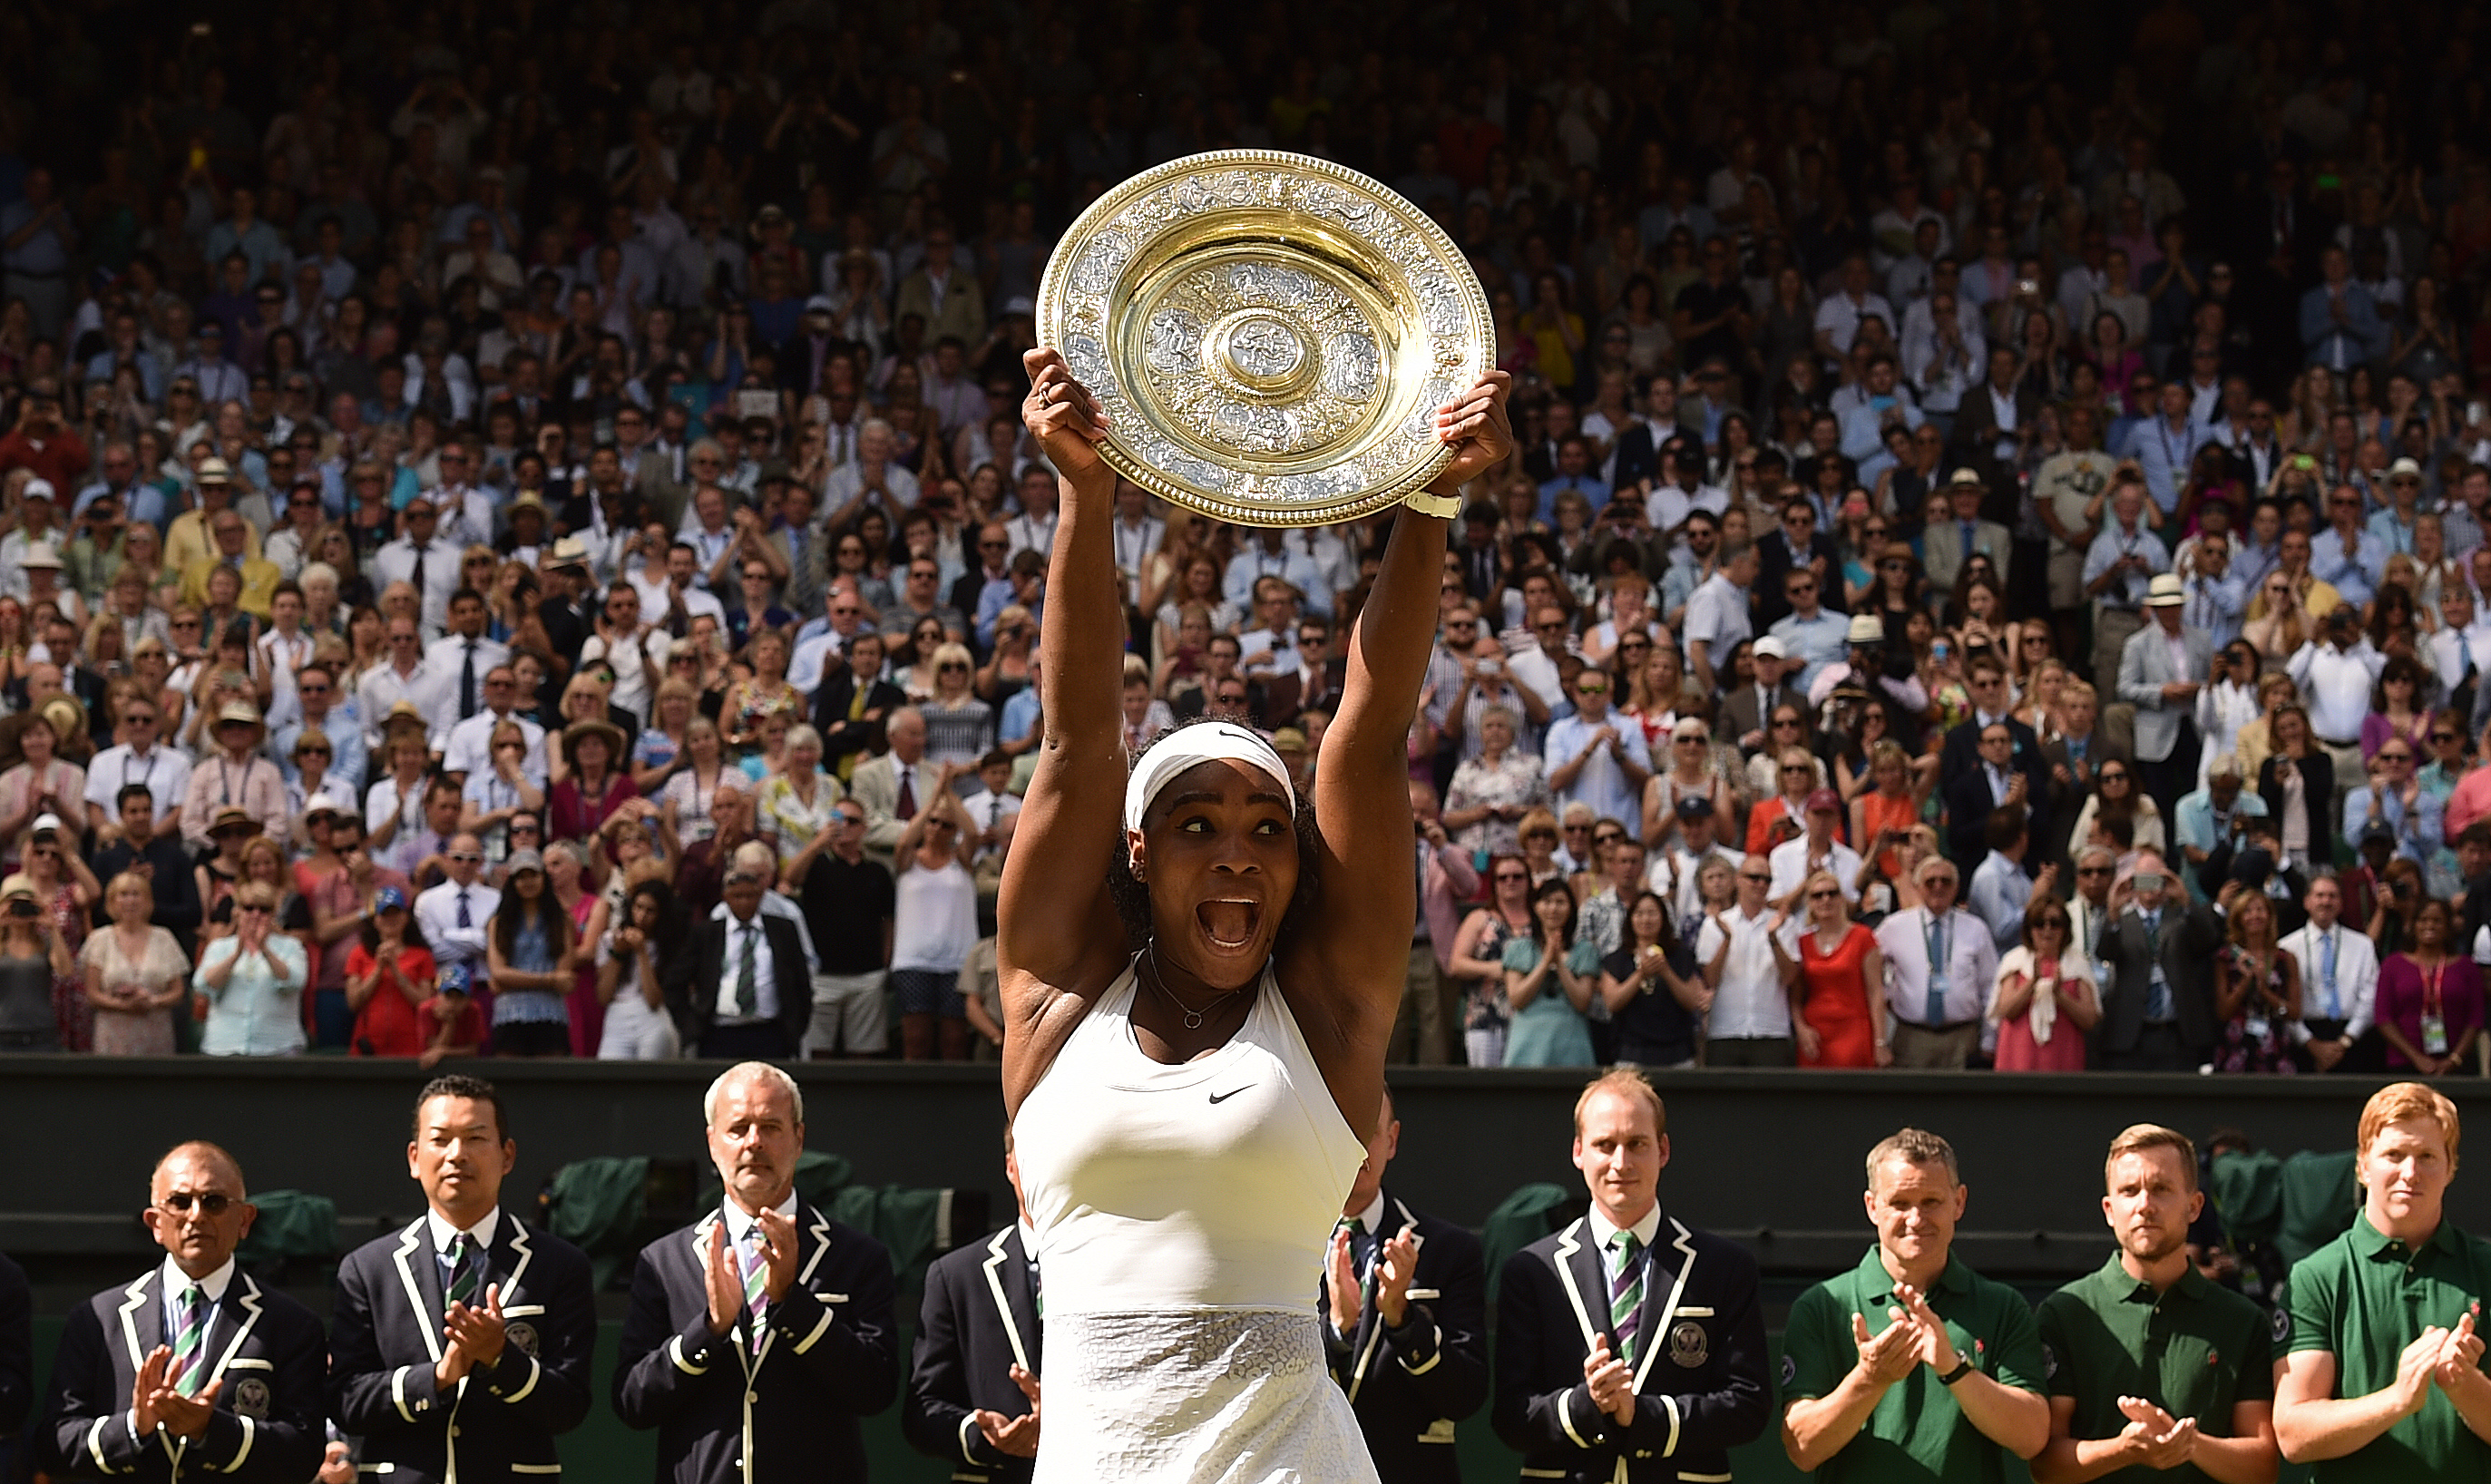  La rivalità tra Serena e Venus Williams